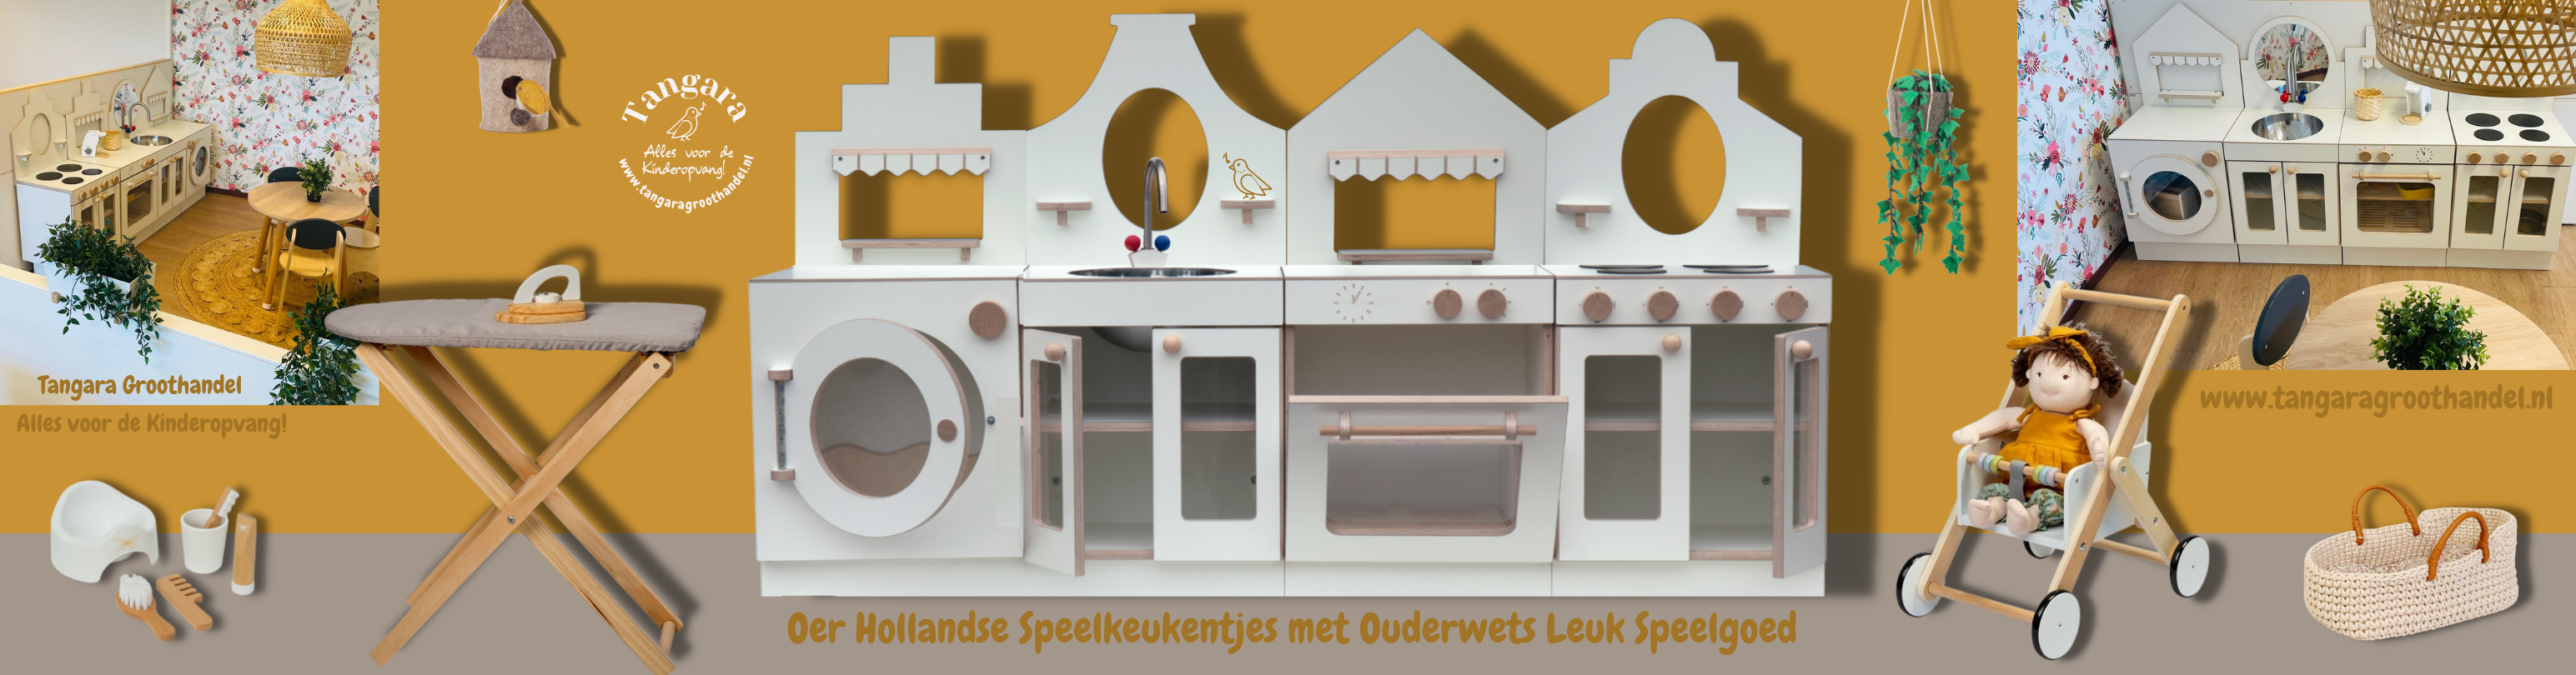 oer Hollandse speel keukentjes met ouderwets leuk speelgoed 